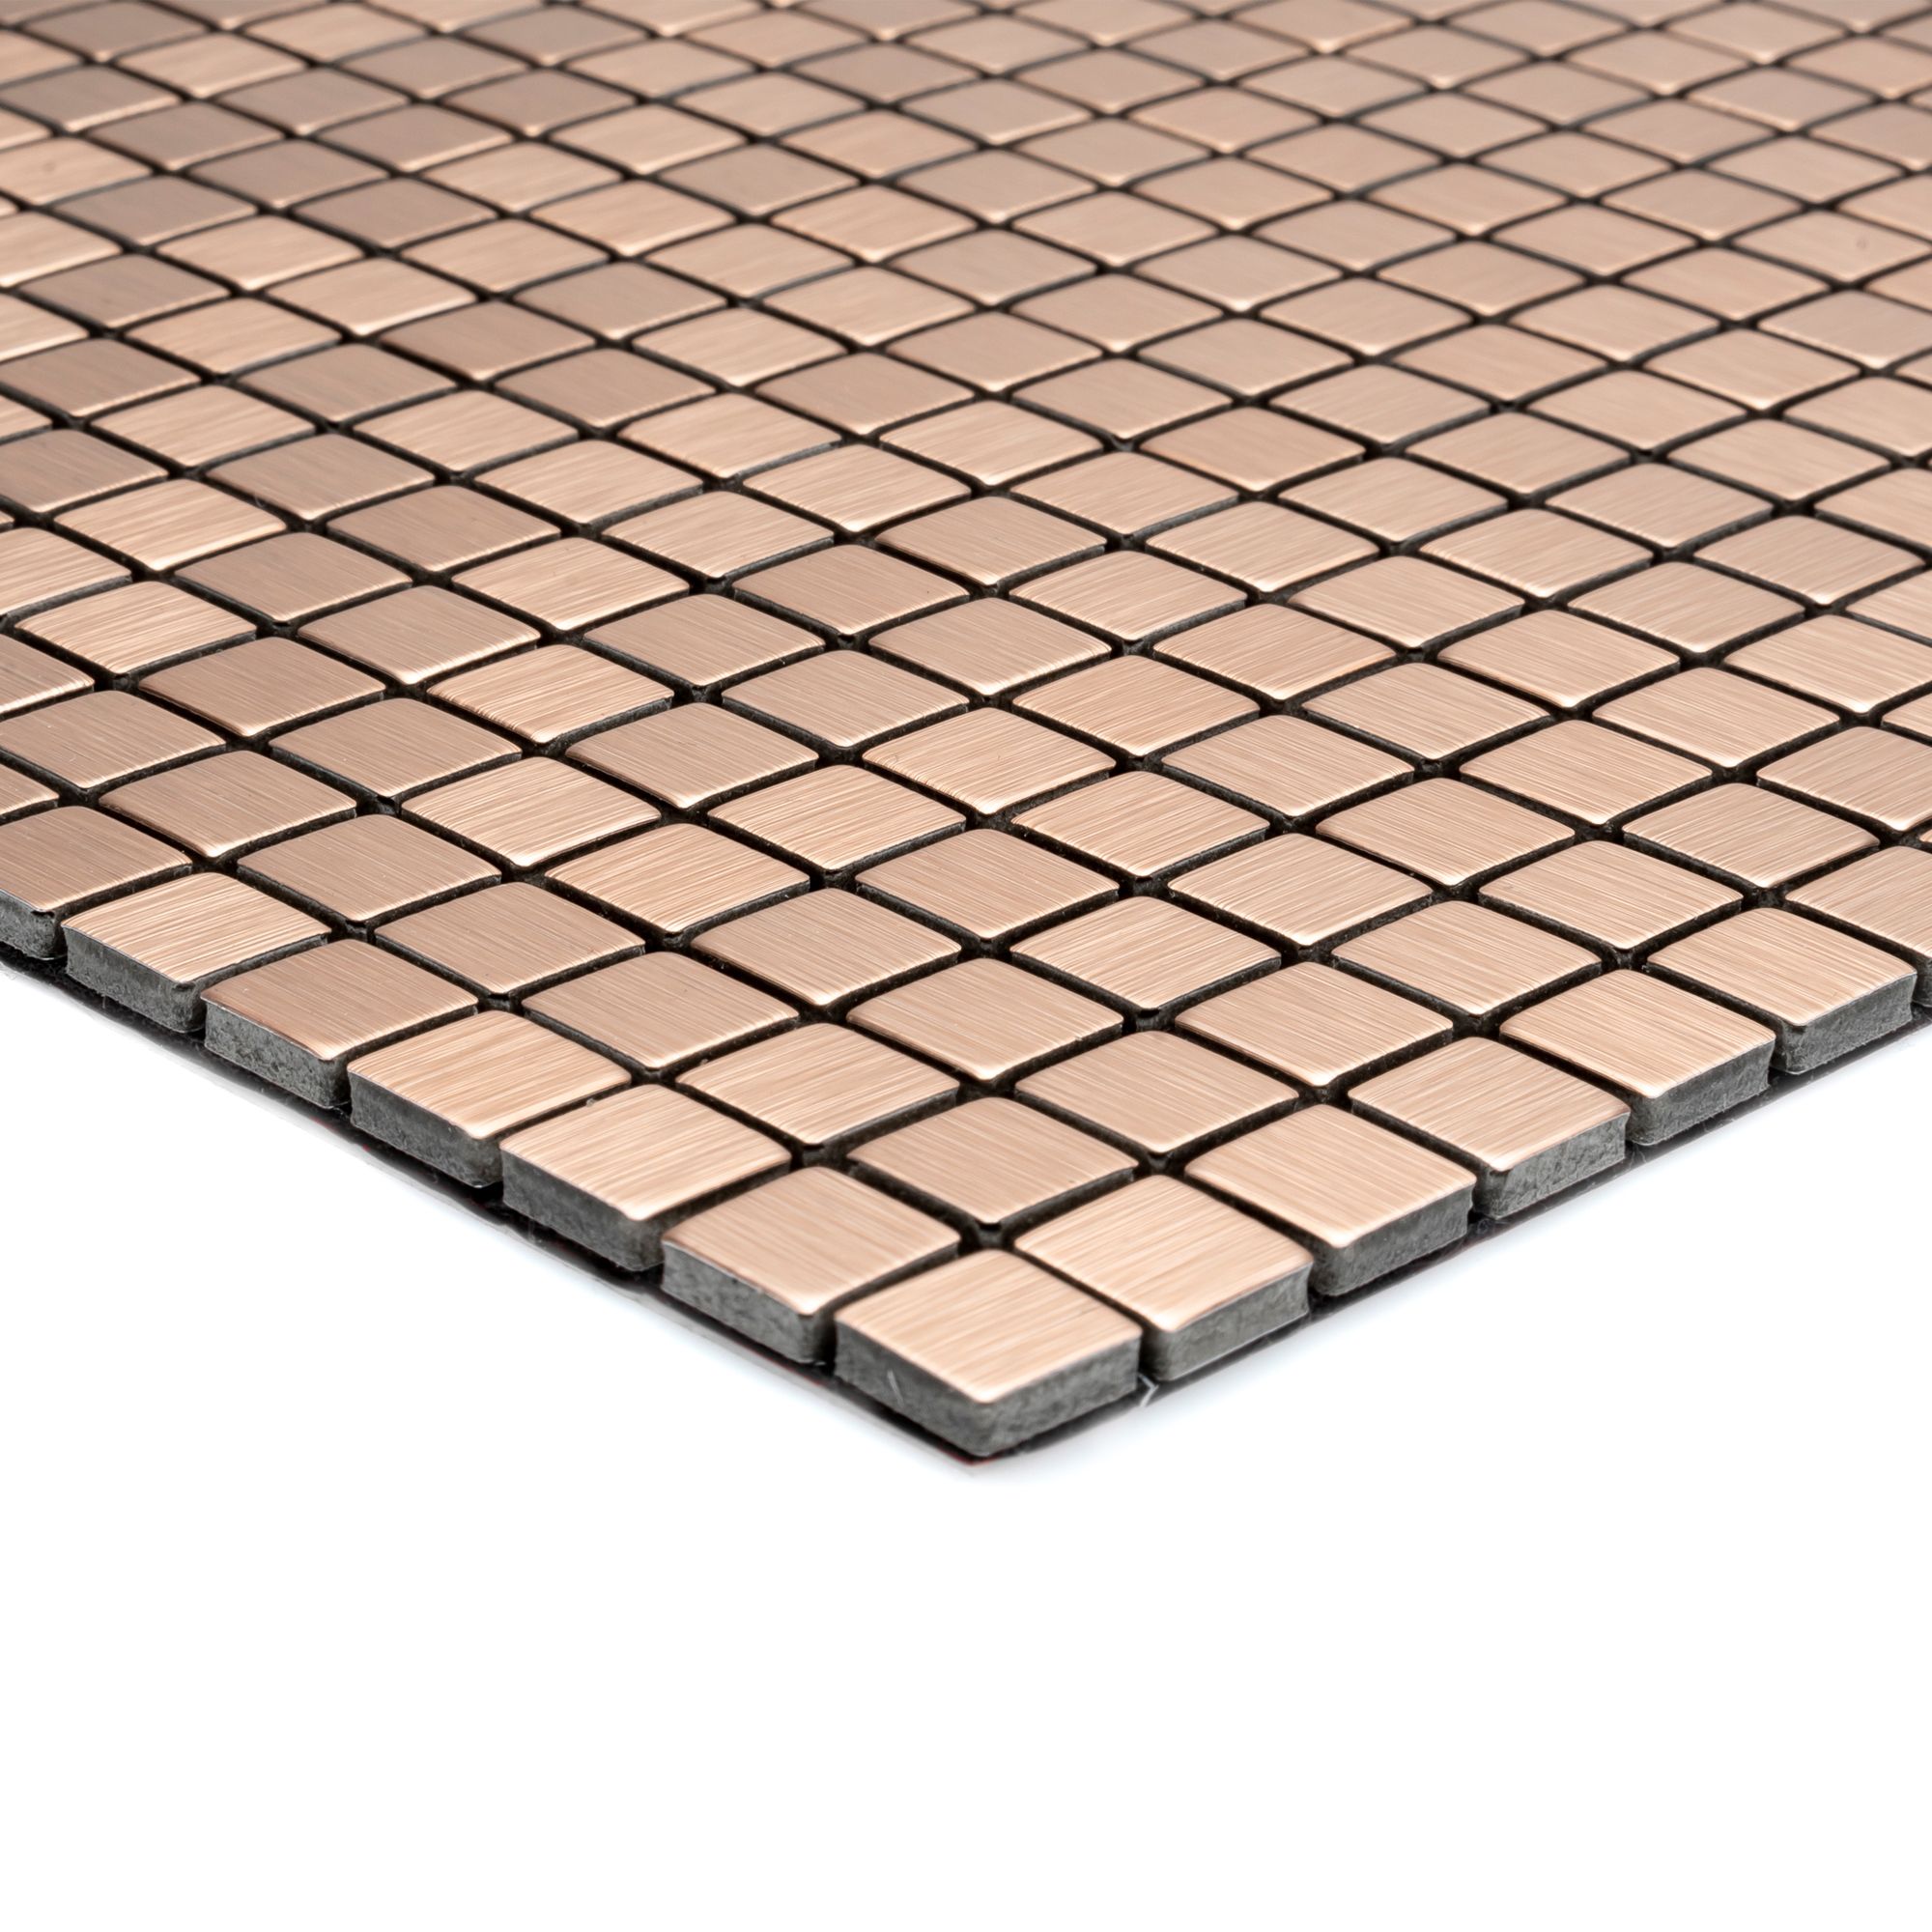 Abu dhabi Matt Brushed bronze effect Micro squares Metal Mosaic tile sheet, (L)290mm (W)290mm